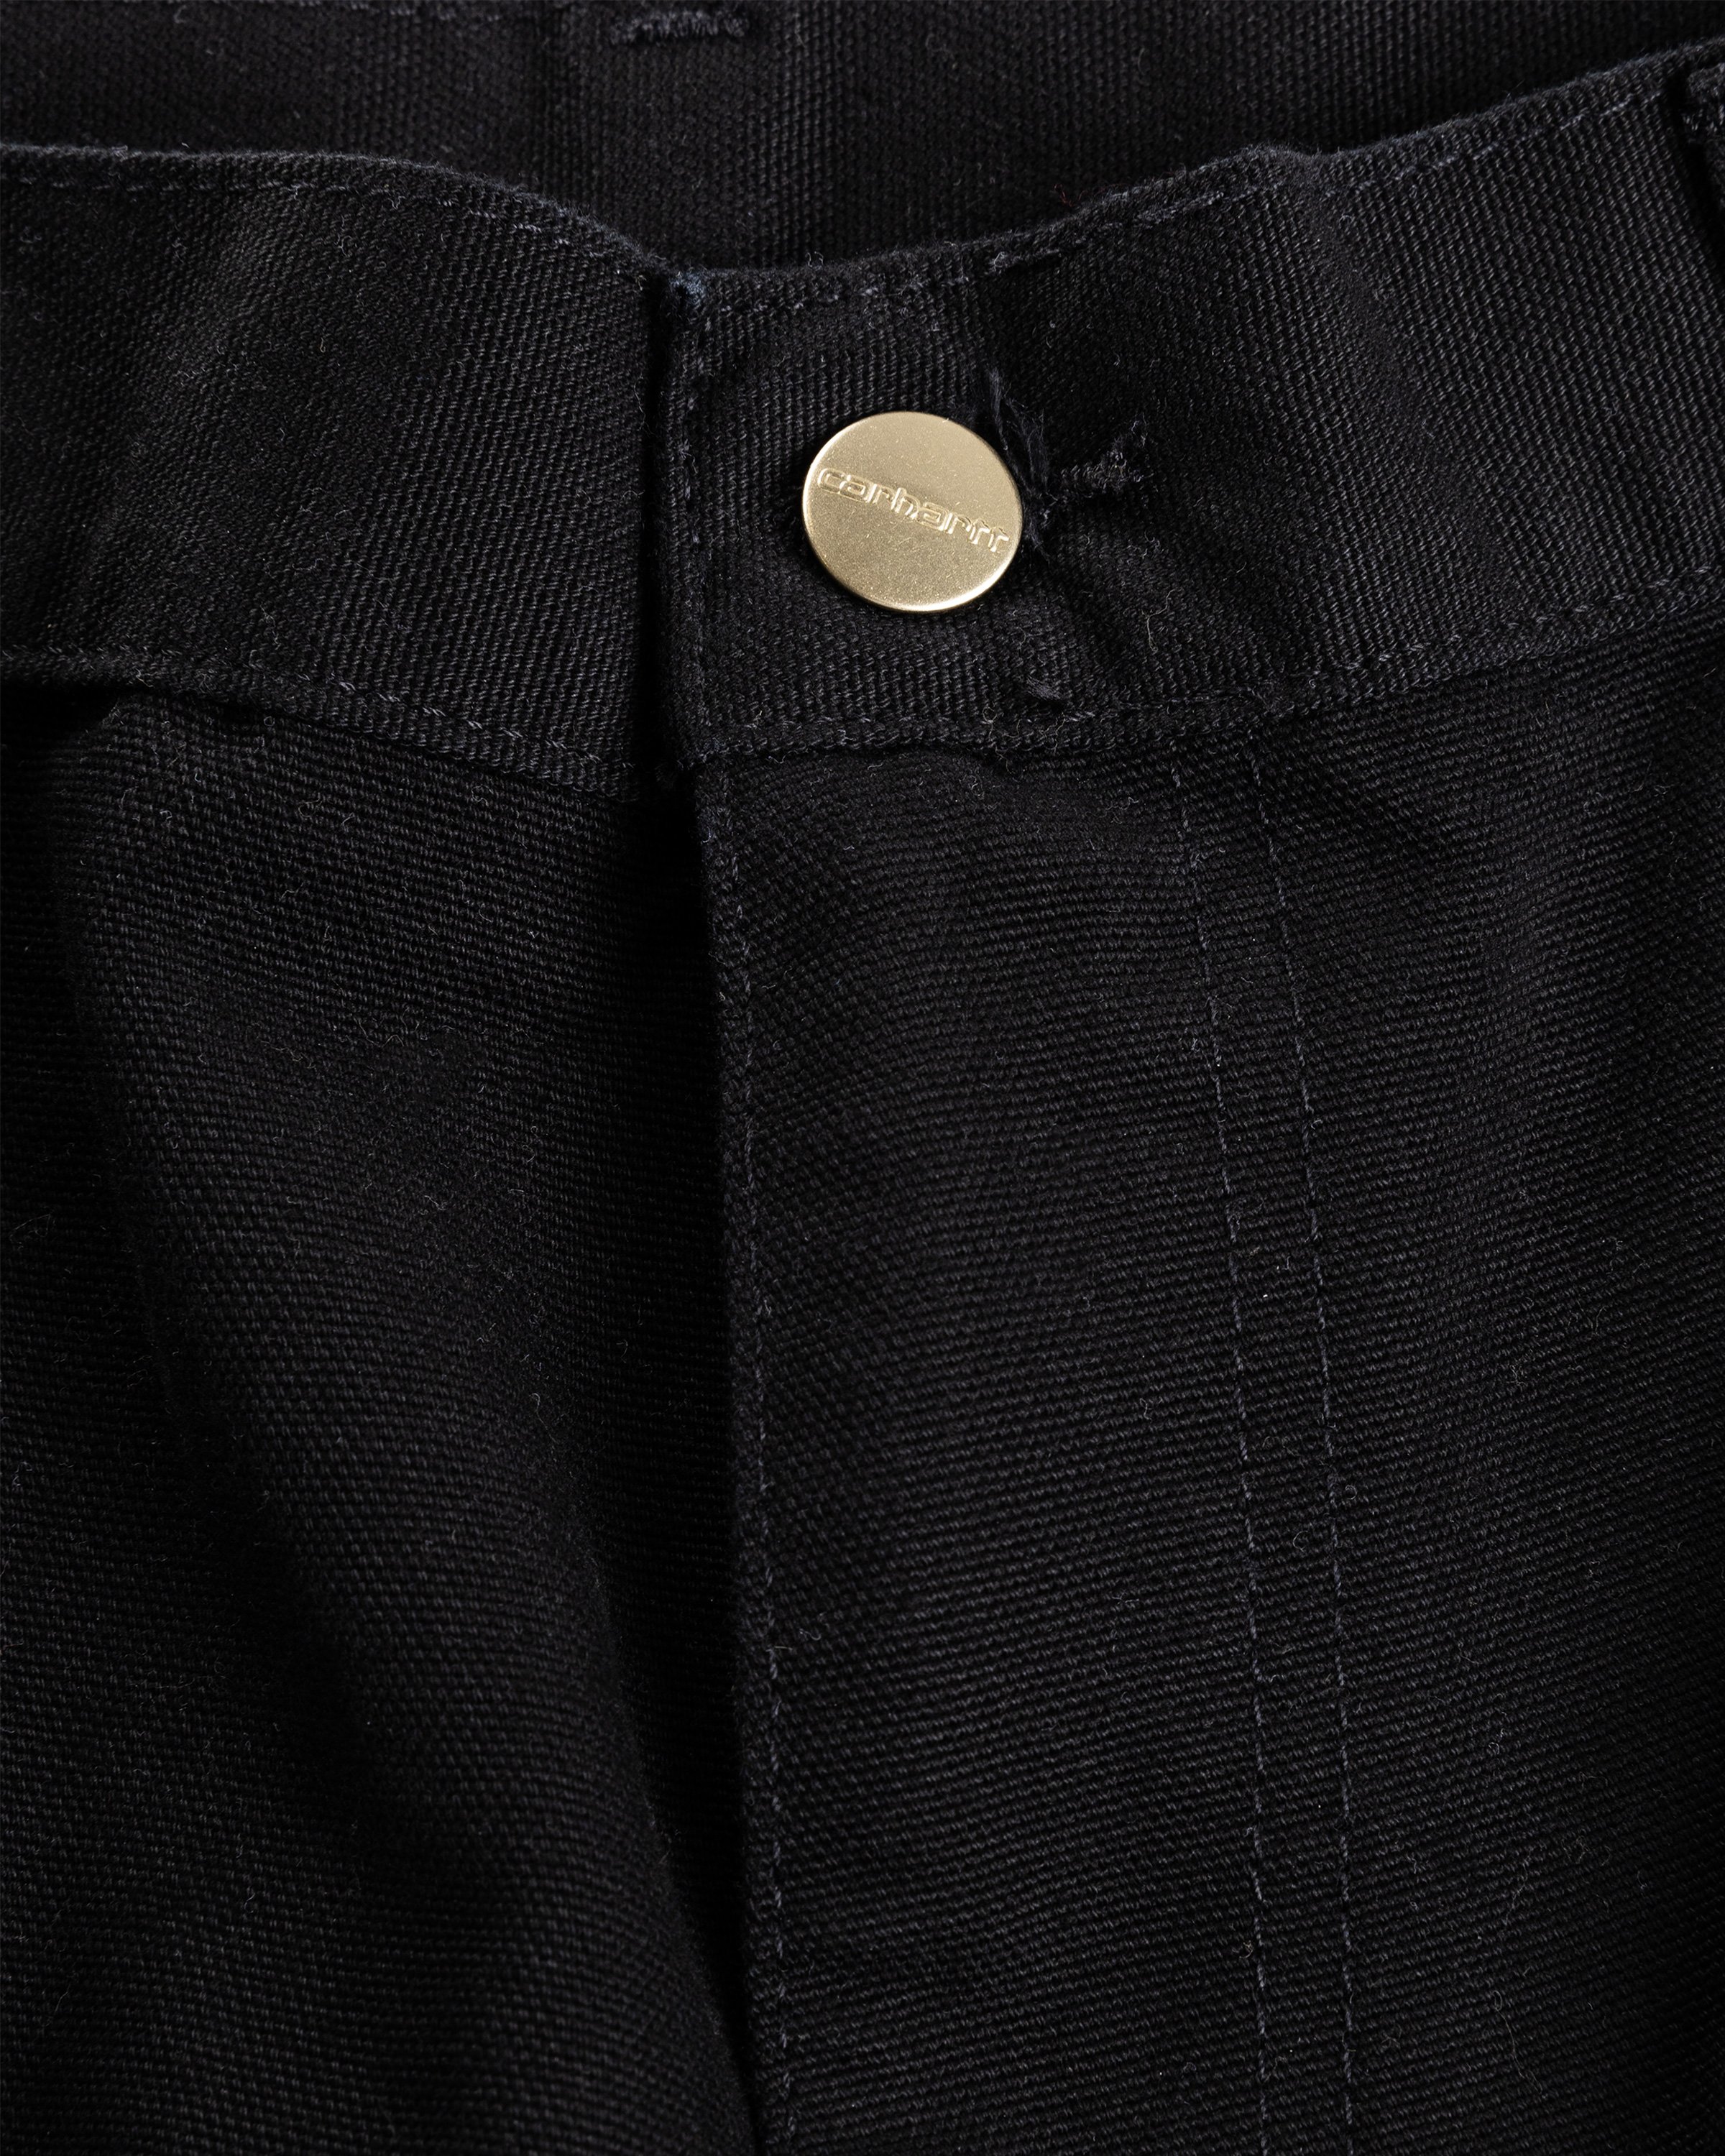 Carhartt WIP - Double Knee Short Rinsed Black - Clothing - Black - Image 4